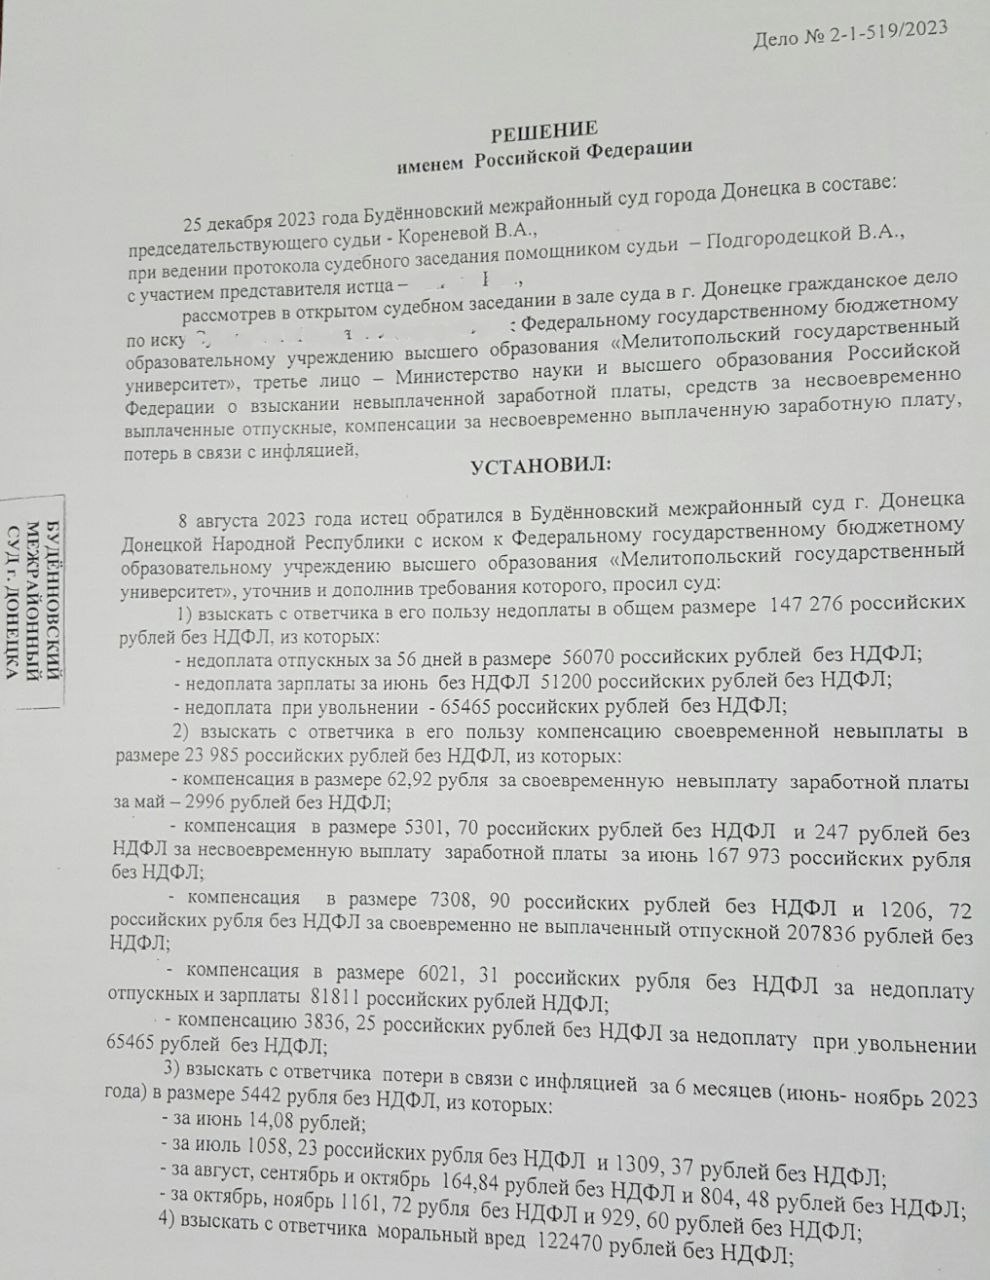 Мелитопольский псевдо-вуз задолжал работнику 265 тысяч рублей – тот получил их через суд 1